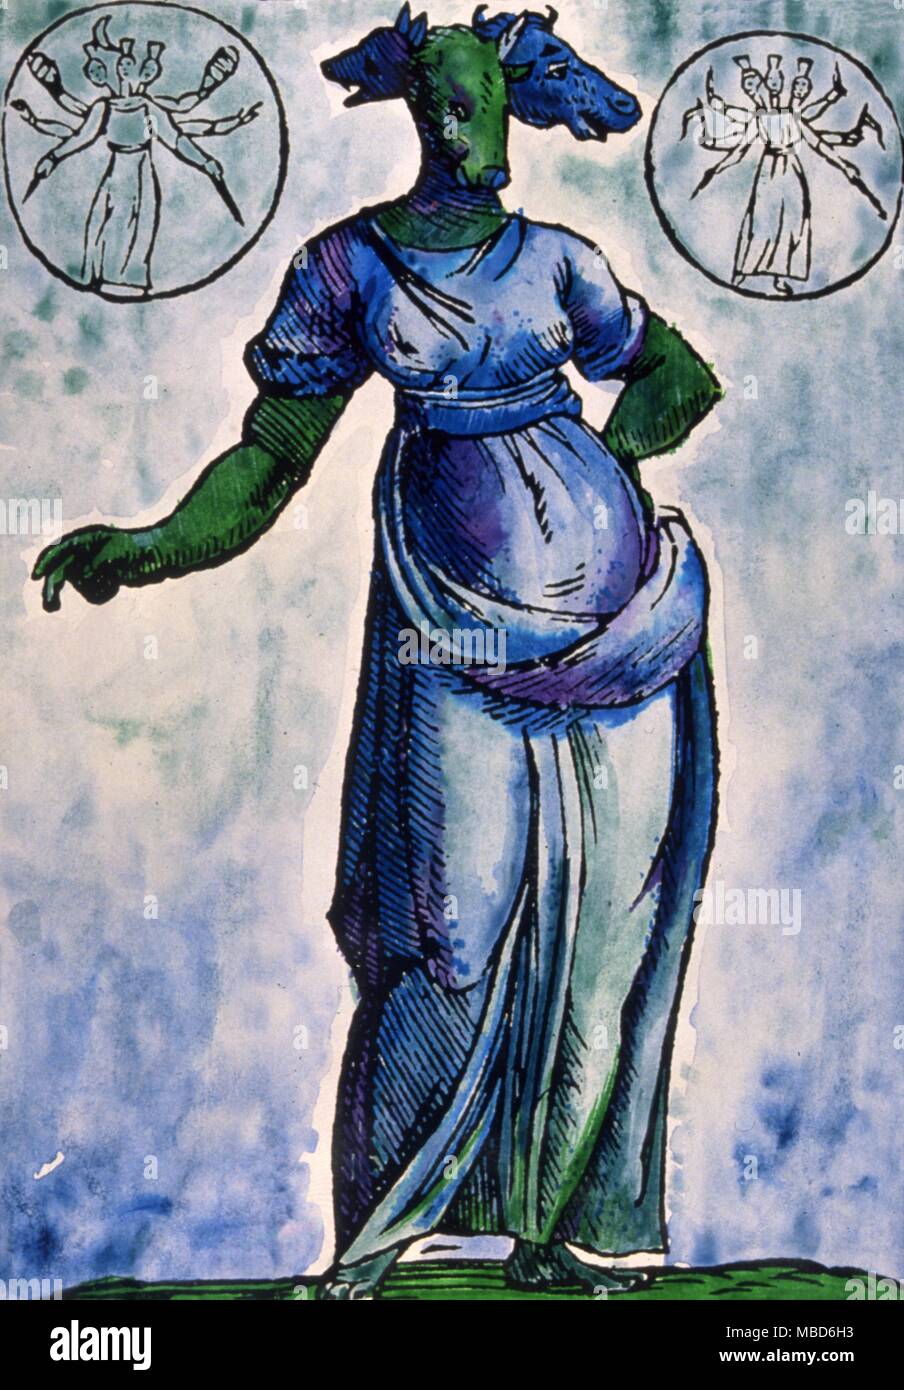 La déesse démoniaque à trois têtes de sorcellerie, Hecate, gouverneur de la Lune. À partir de la 'MCatari. ythologia» la mythologie grecque Hécate, la déesse à trois têtes qui, sous des noms divers, semble avoir été la déesse de l'art ancien, ou vieille religion, depuis avant l'époque classique. Gravure sur bois, Natalis Comitis, ythologiae "démons" l'Hécate, à trois têtes de Natalis Comiti's 'Mythologiae', 1616 edition. La tradition des chefs de la triade sont le cheval, le chien et le lion, mais elles varient dans certaines images. Banque D'Images